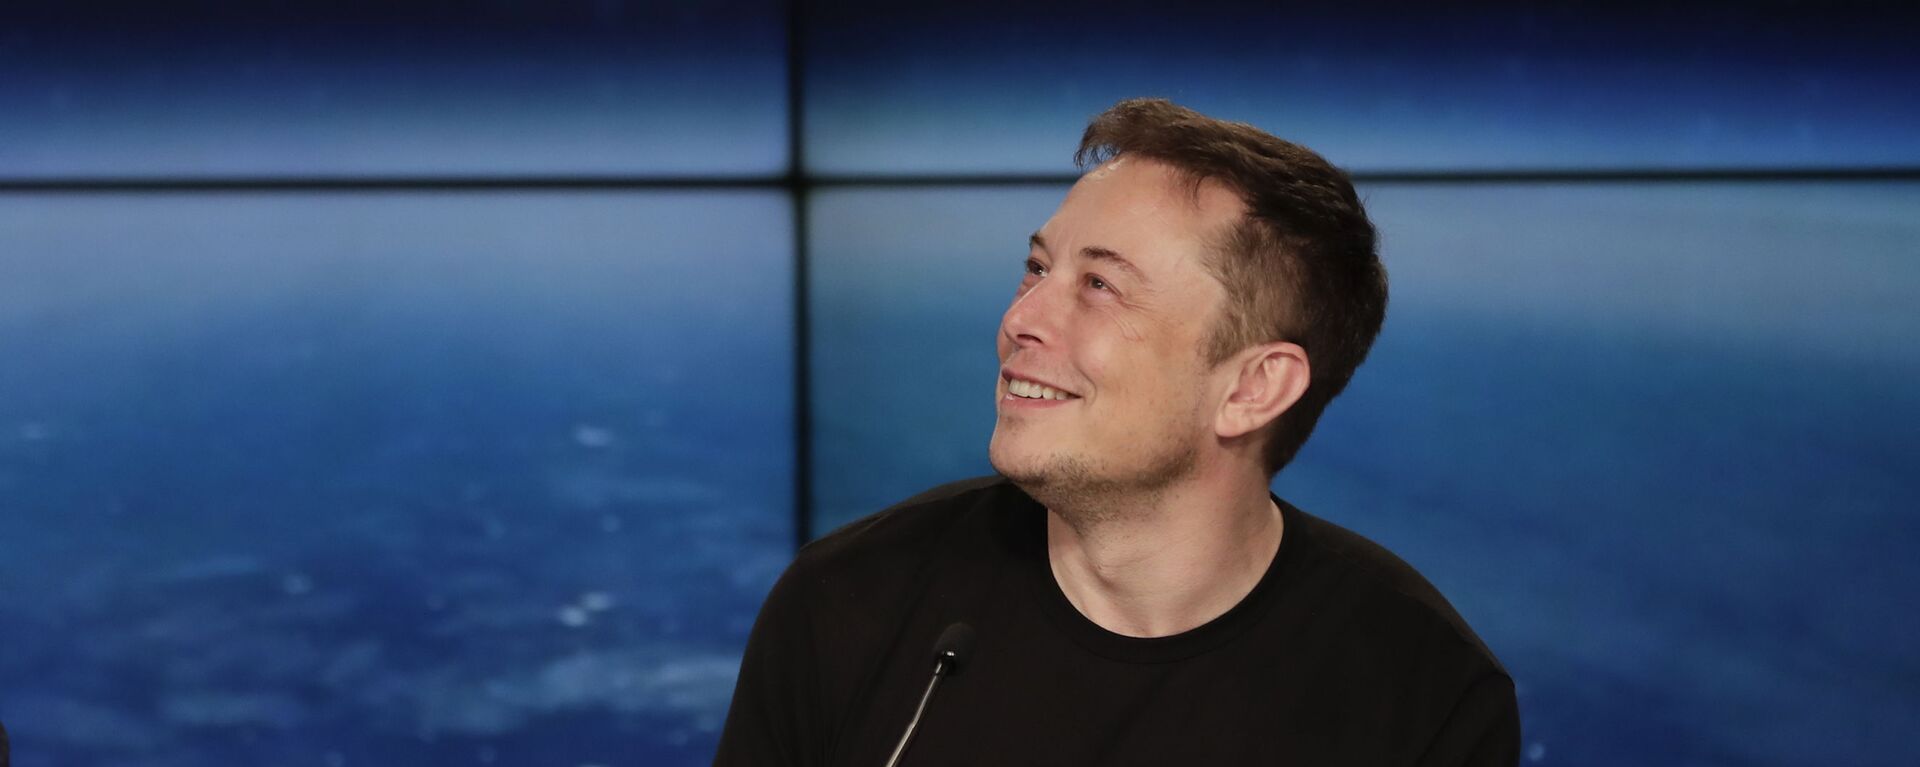 Генеральный директор Tesla и SpaceX Илон Маск на пресс-конференции после успешного запуска тяжелой ракеты Falcon 9 SpaceX (6 февраля 2018). Флорида - Sputnik Армения, 1920, 08.12.2021